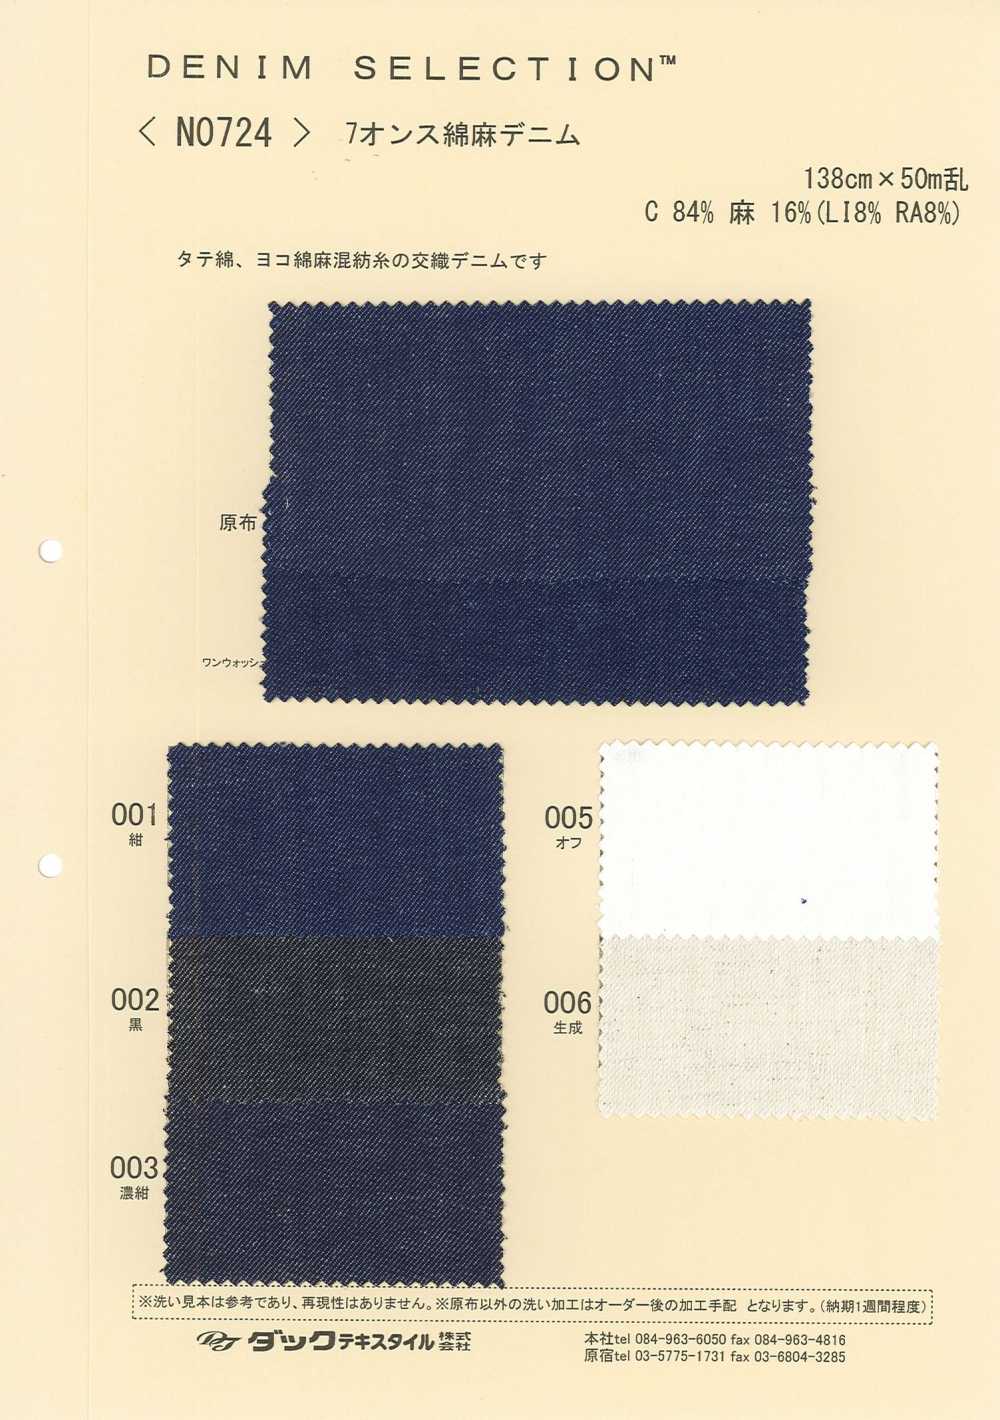 N0724 Leinen-Denim[Textilgewebe] DUCK TEXTILE